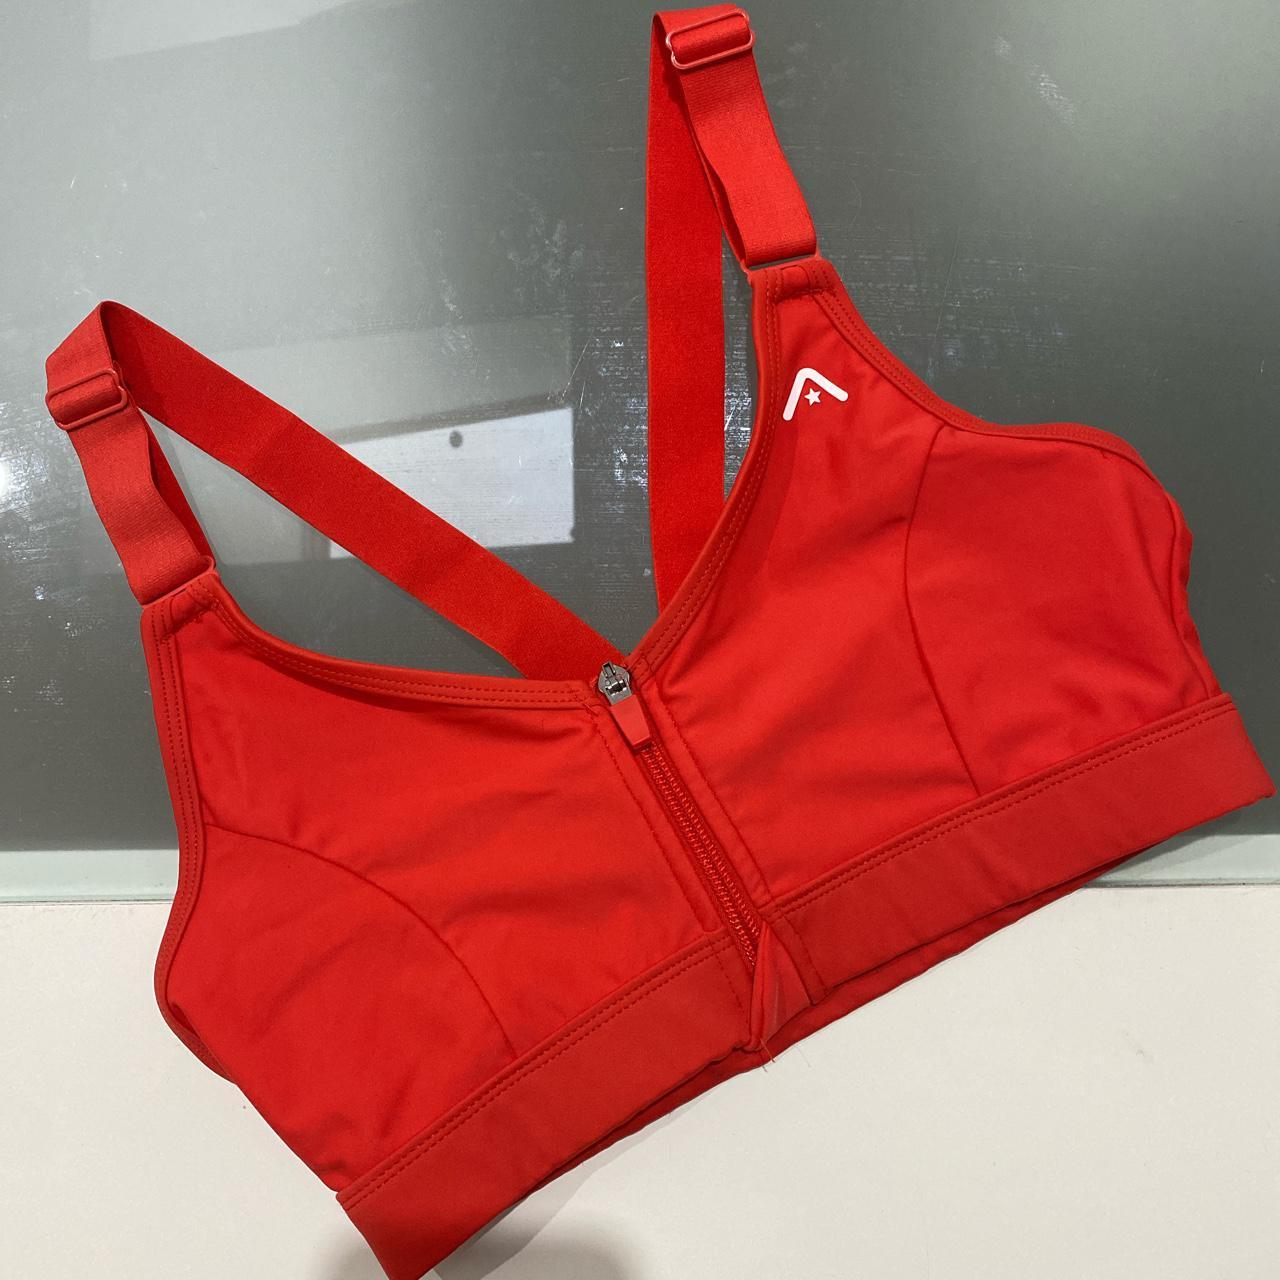 ROCKWEAR Red Sports Bra ☁️ only worn once, in - Depop